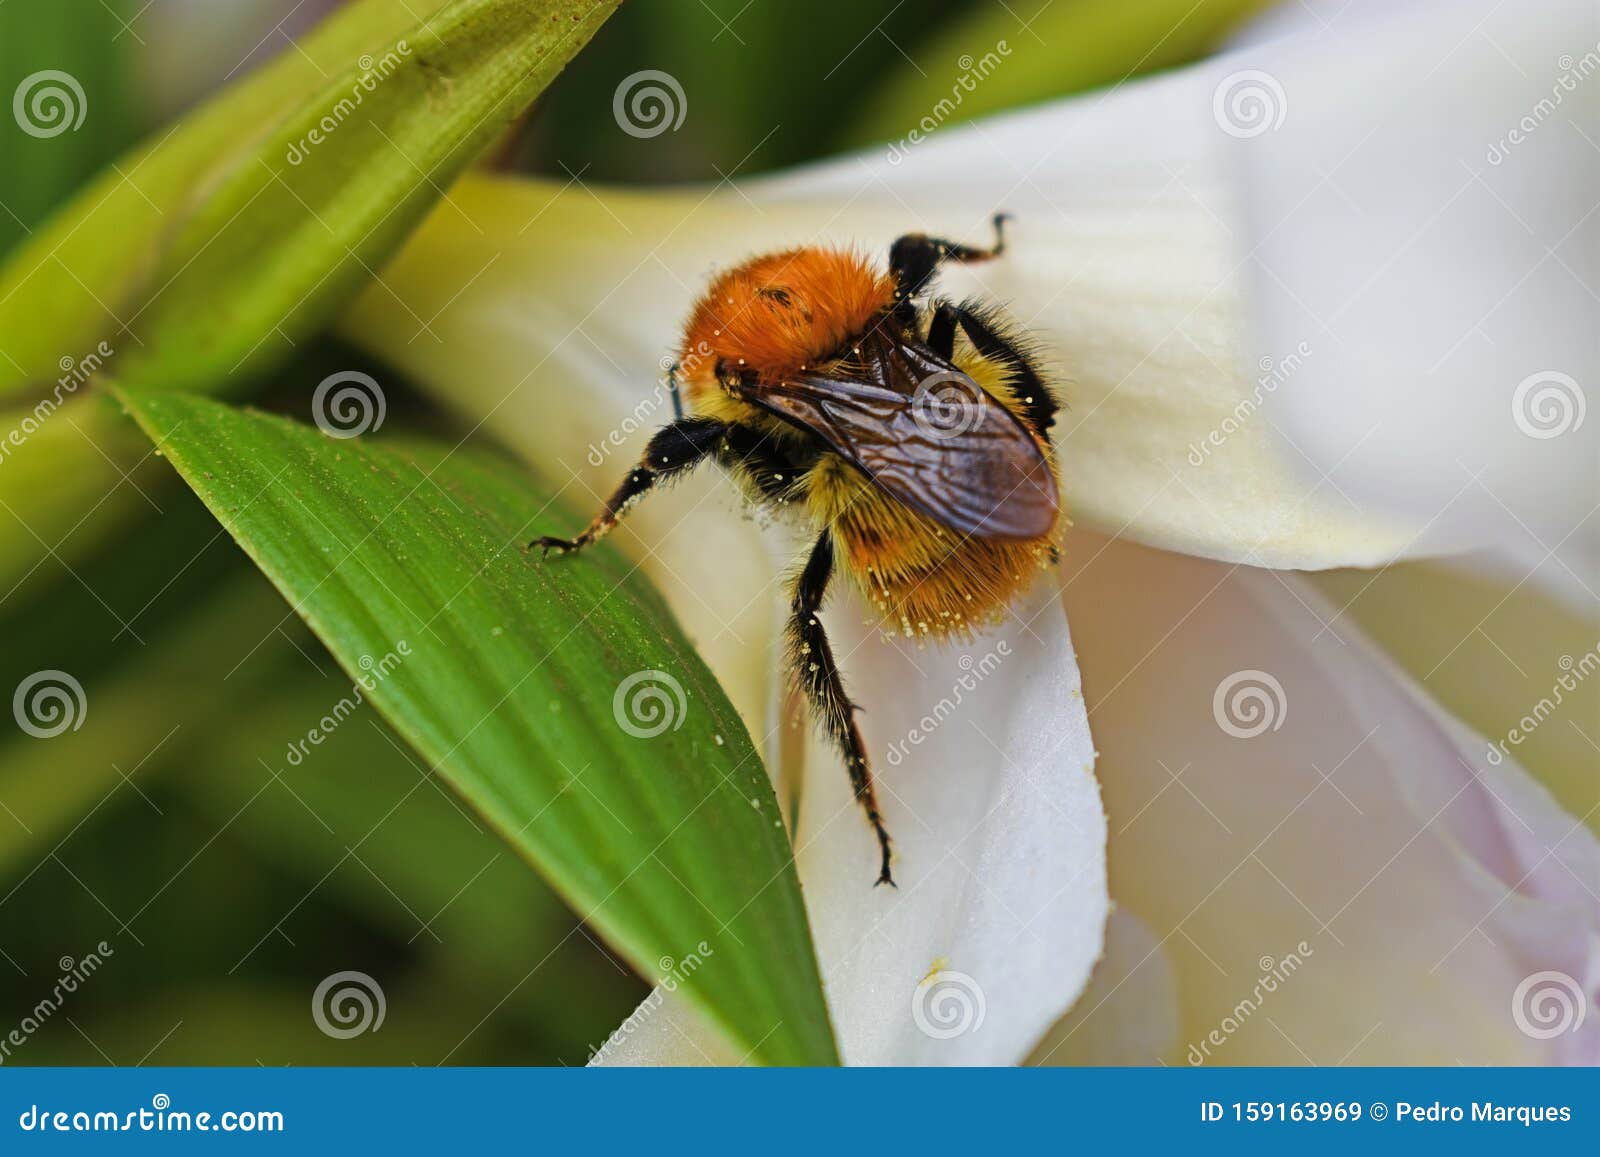 wonderful bee in a flower